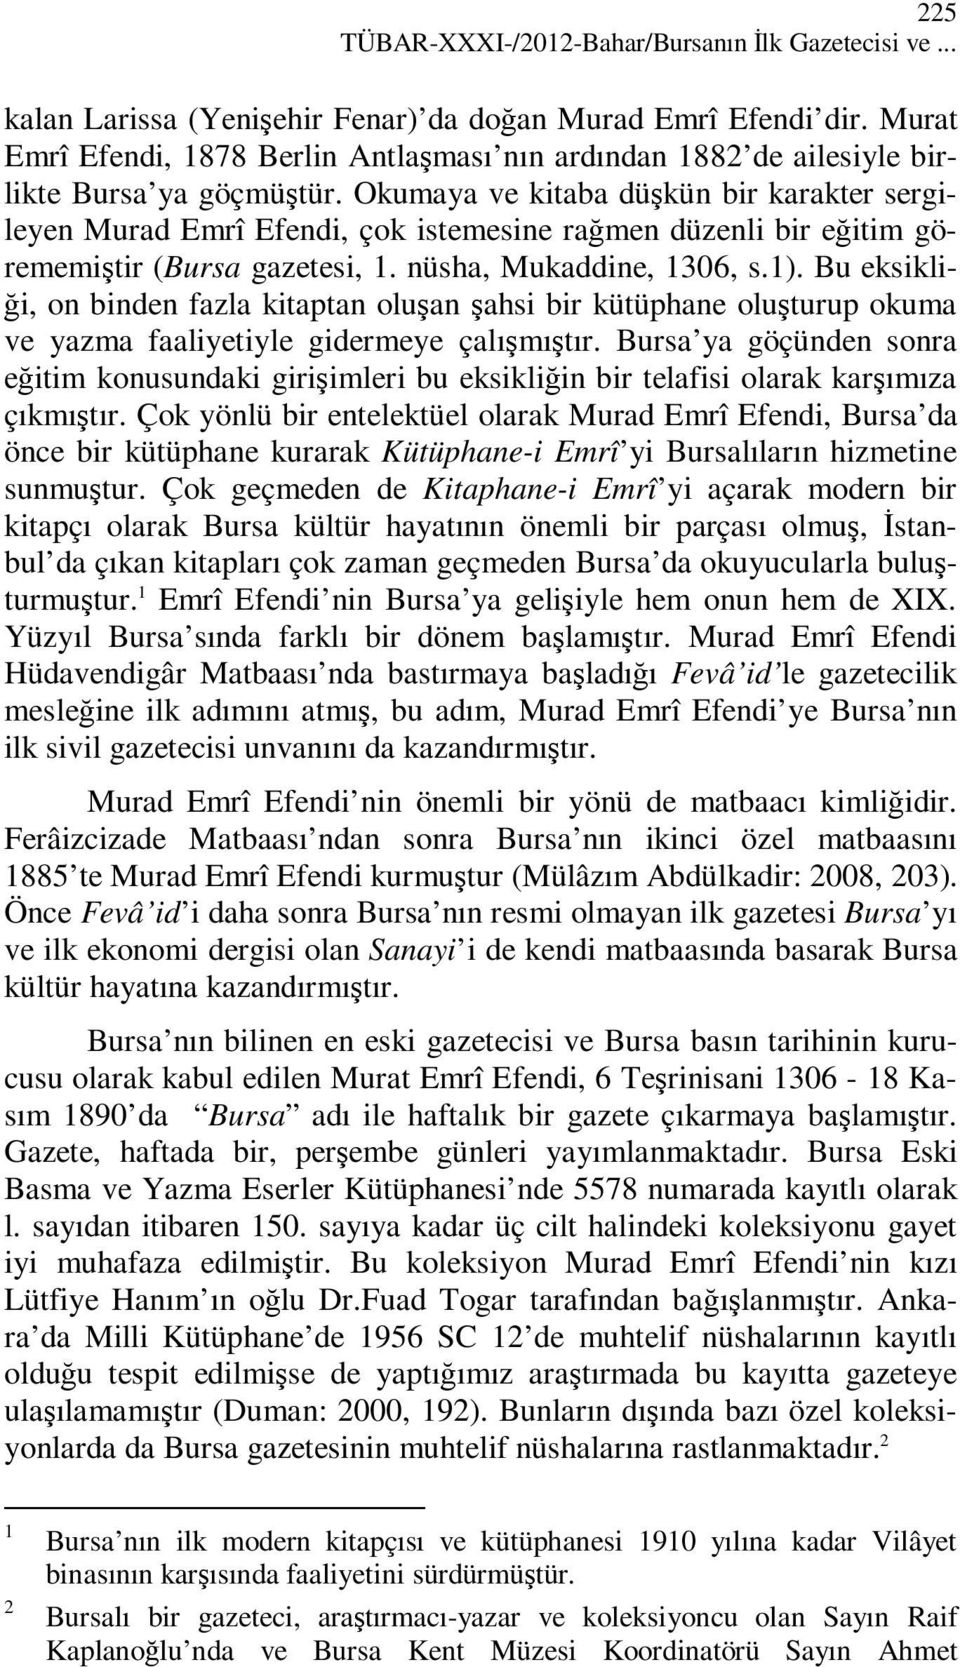 Okumaya ve kitaba düşkün bir karakter sergileyen Murad Emrî Efendi, çok istemesine rağmen düzenli bir eğitim görememiştir (Bursa gazetesi, 1. nüsha, Mukaddine, 1306, s.1).